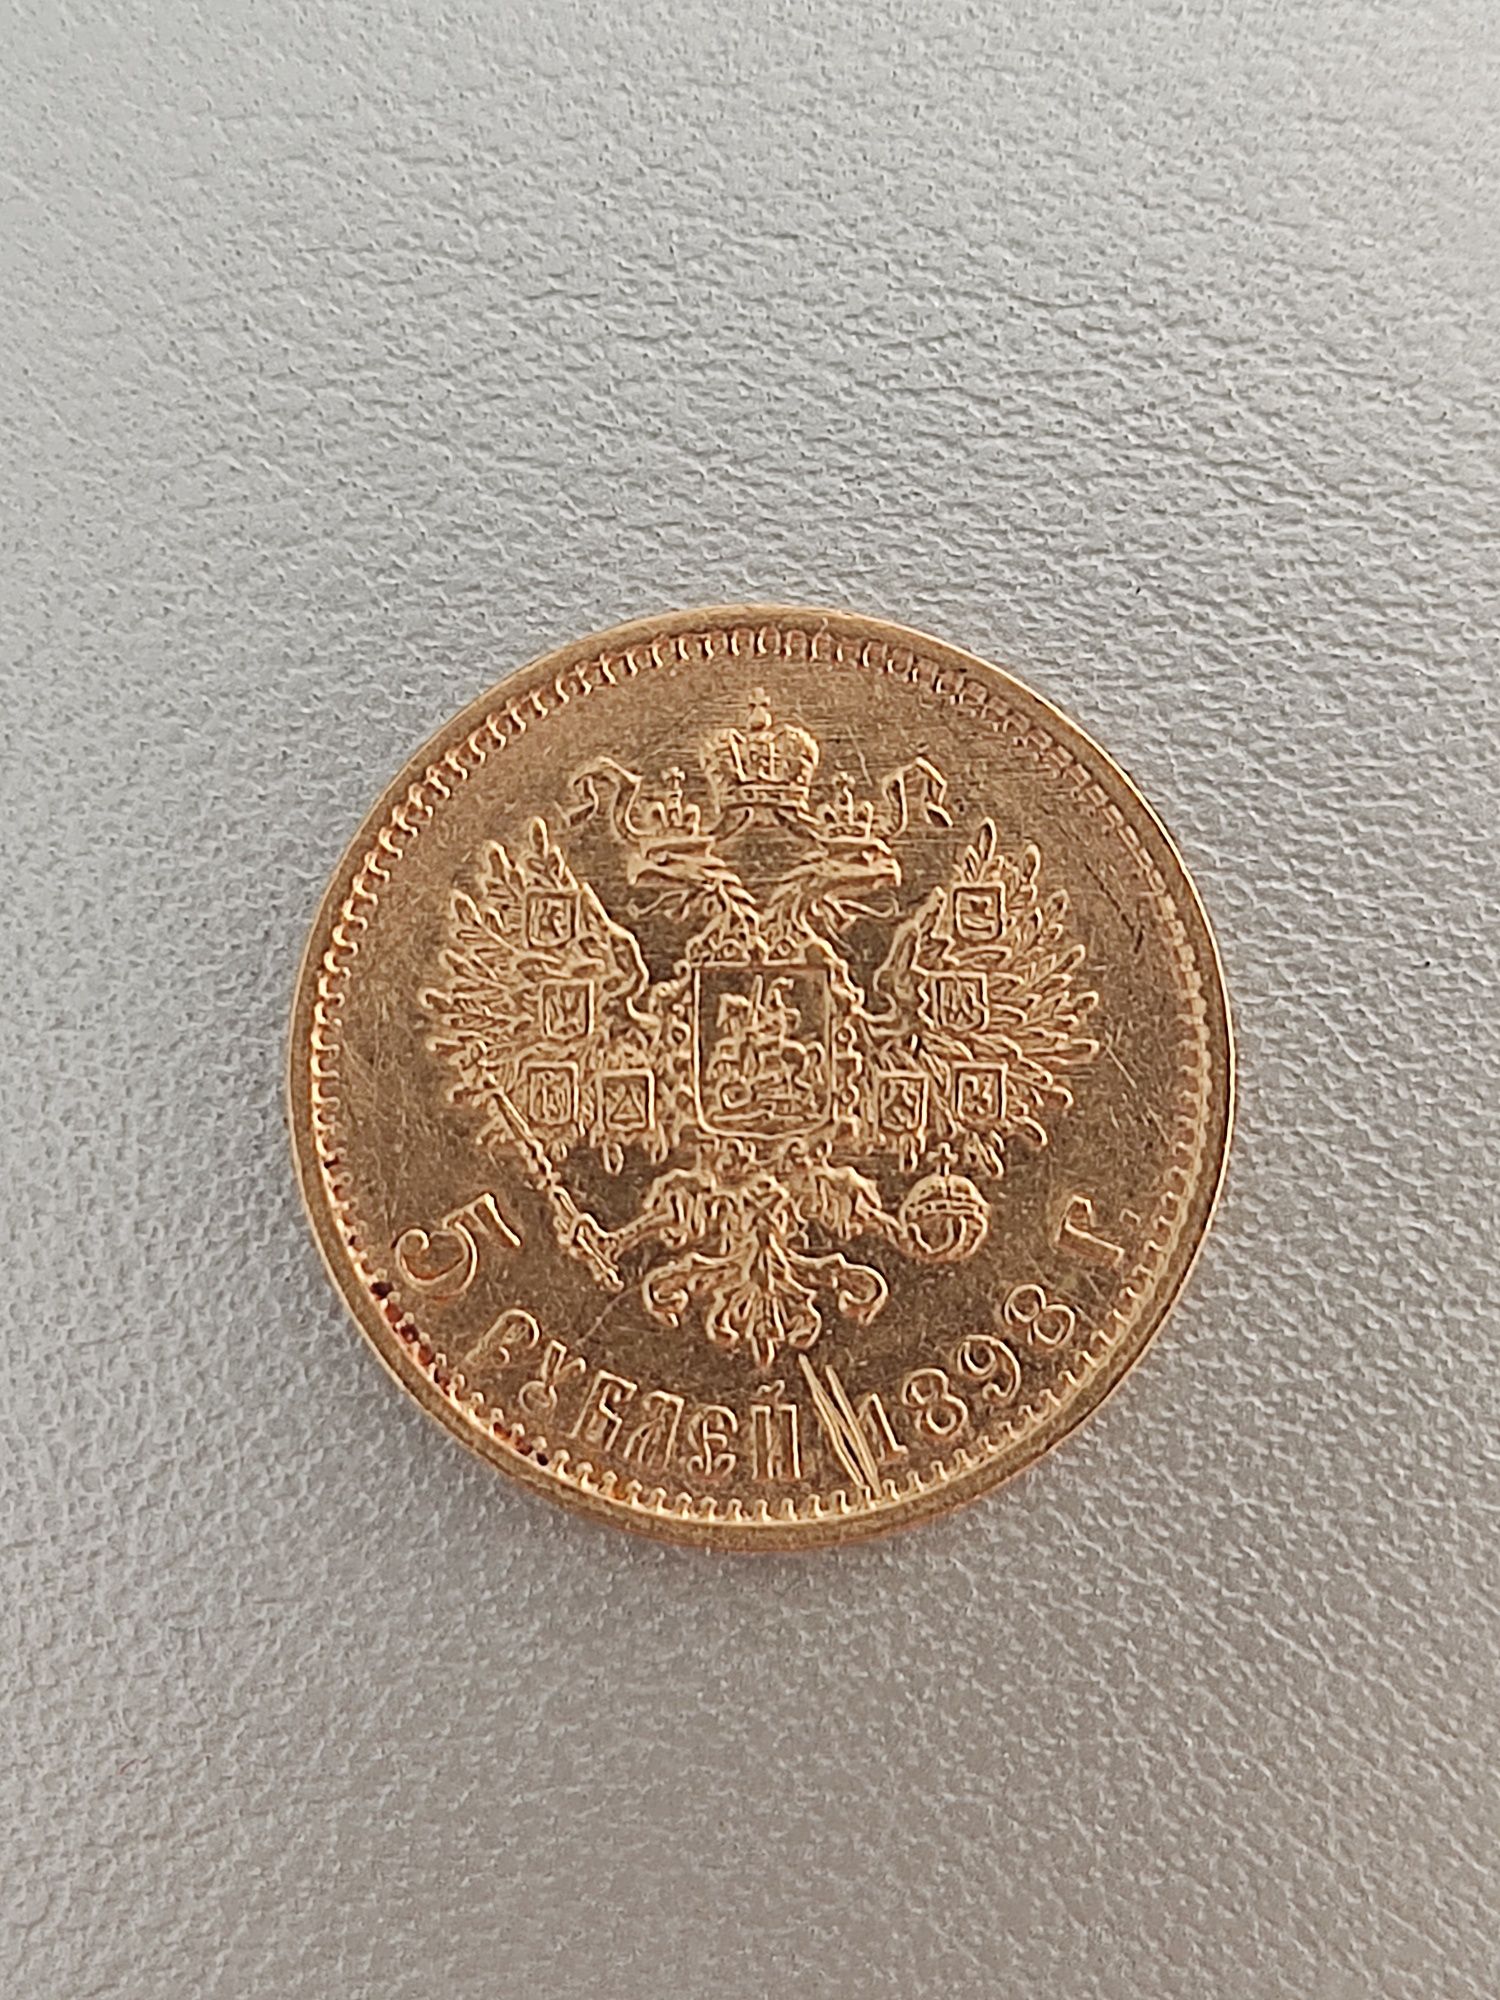 Продам золотую монету 5 рублей 1898 г.